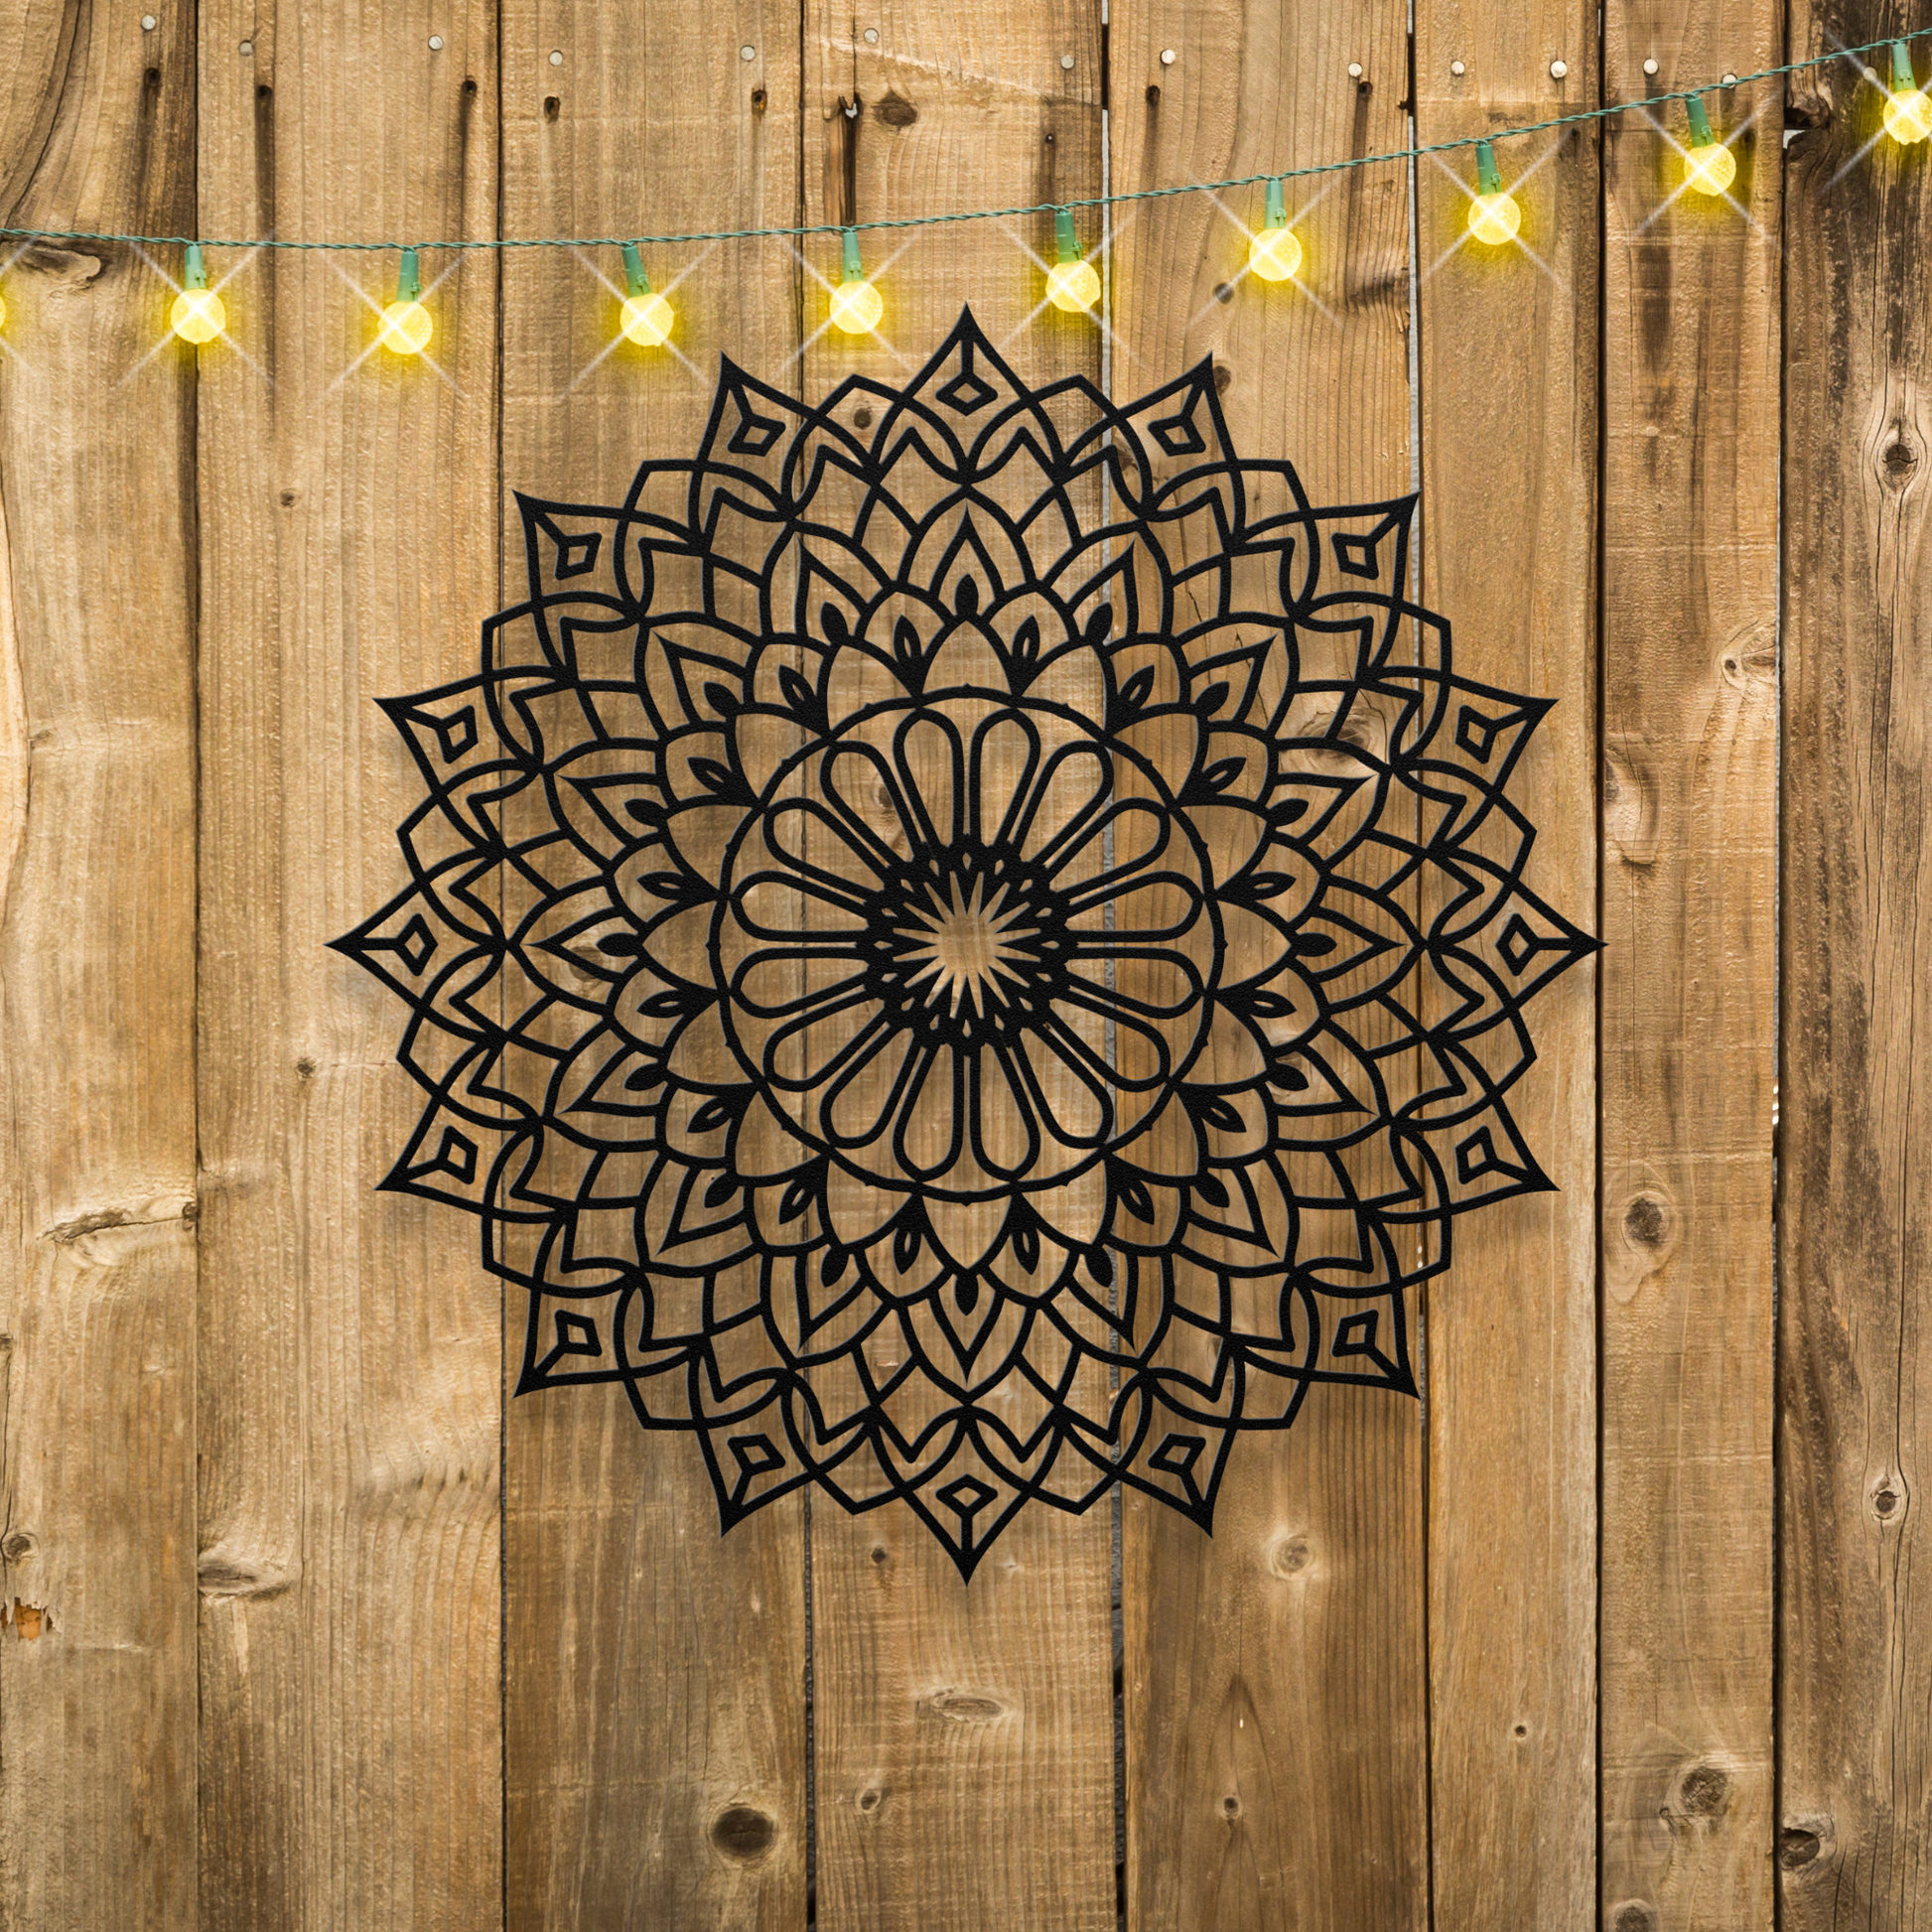 Floral Starburst Mandala Metal Wall Art on wood fence